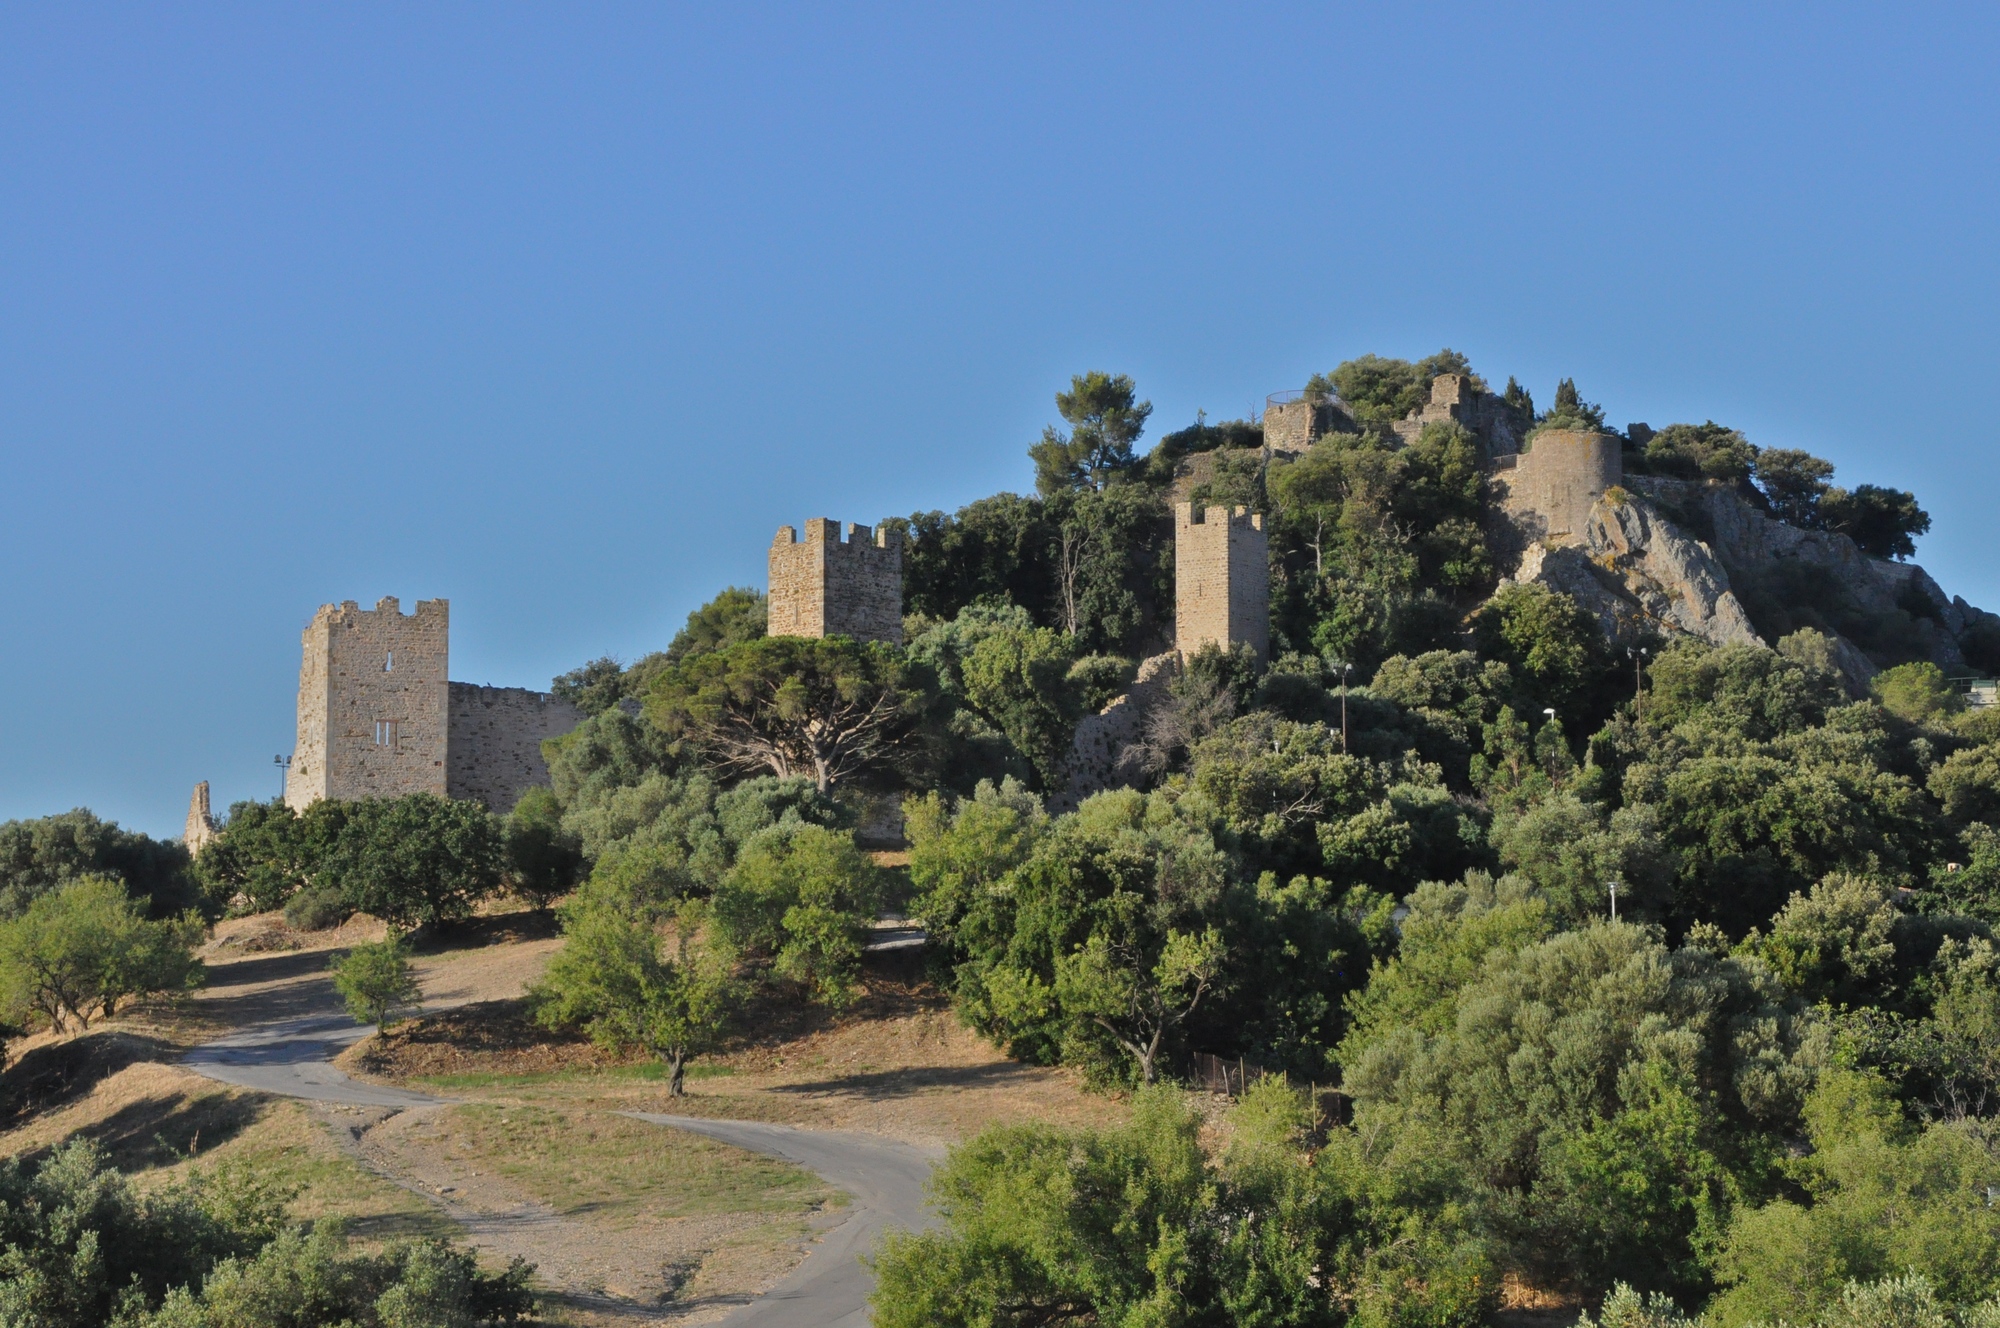  Le château d Hyères